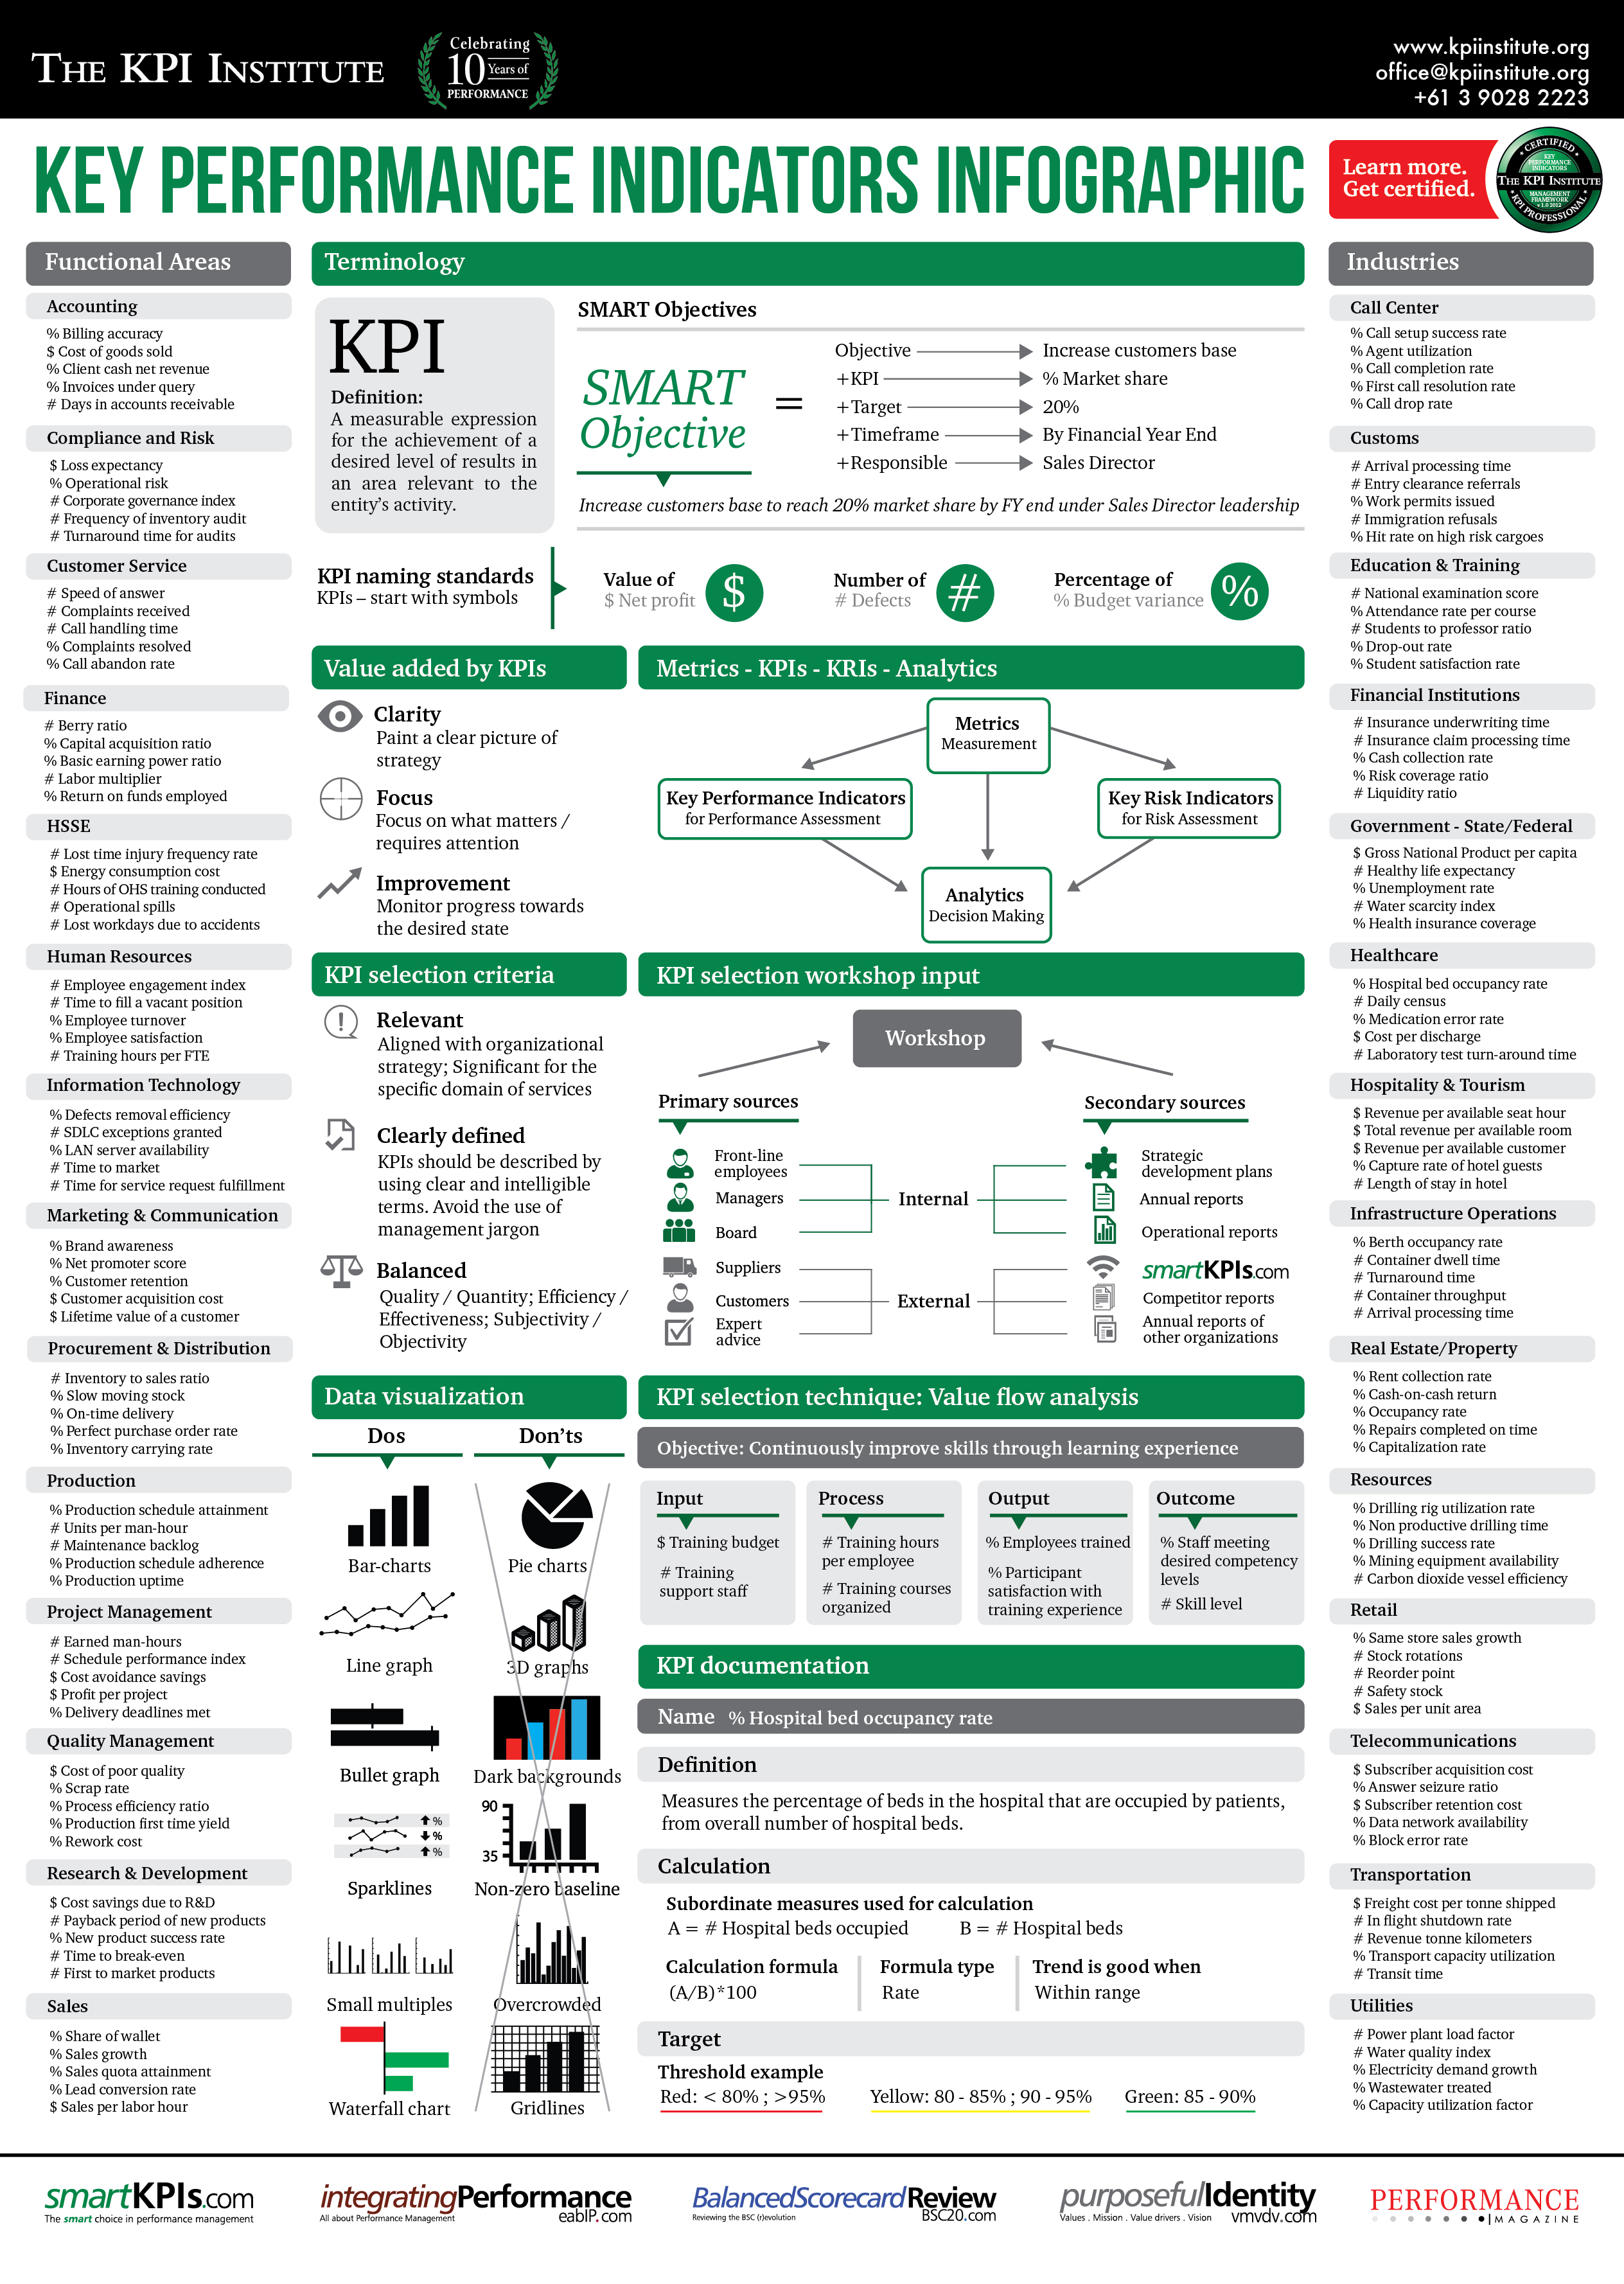 The-KPI-Institute-KPI-training-infographic